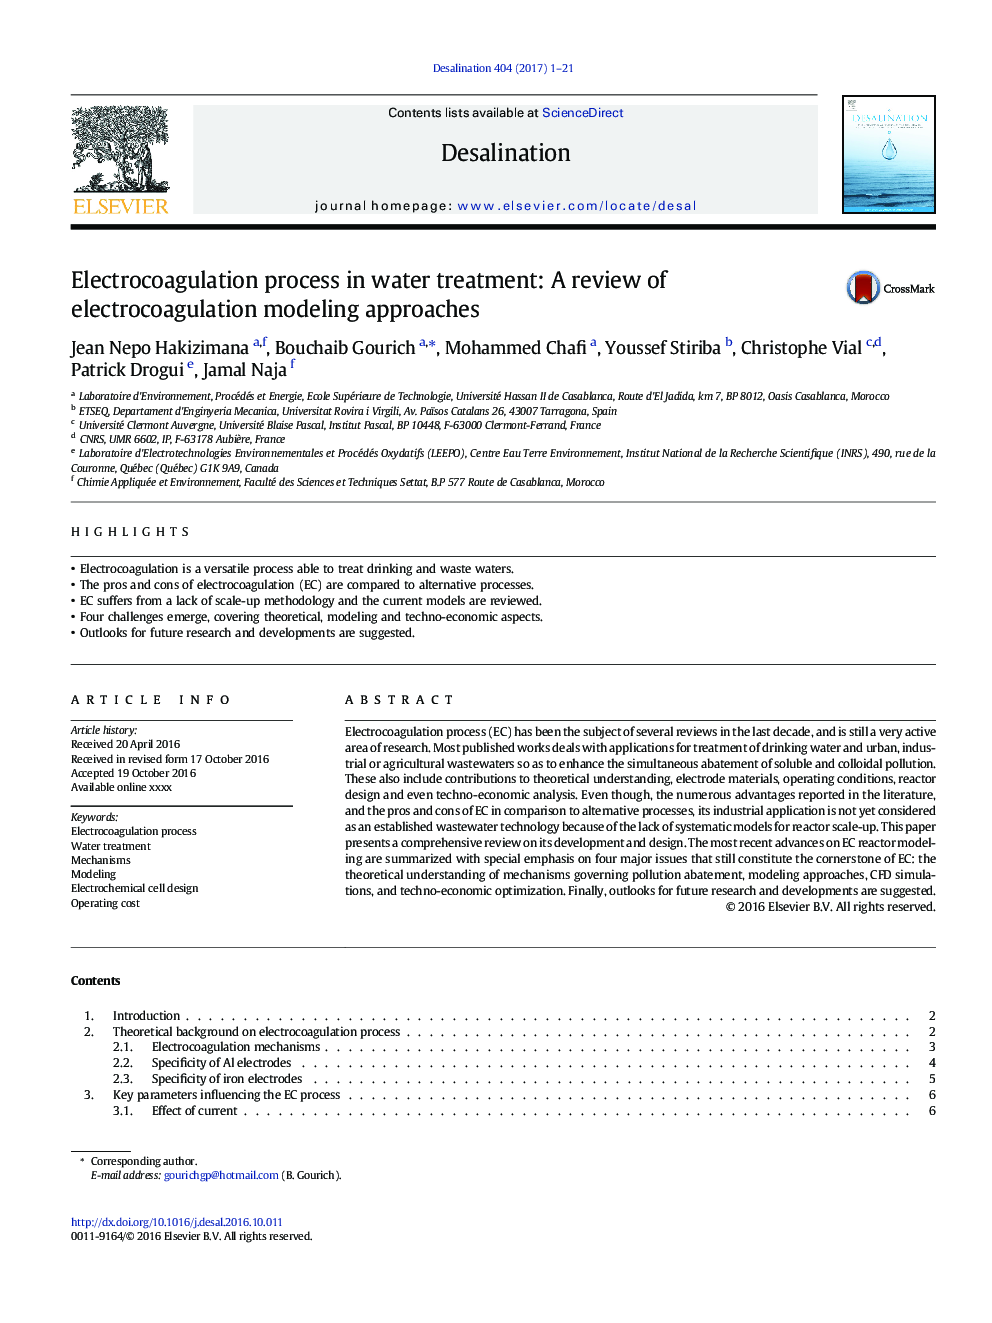 روند الکتروکواگولاسیون در تصفیه آب: مرور روشهای مدلسازی الکتروکواگولاسیون 